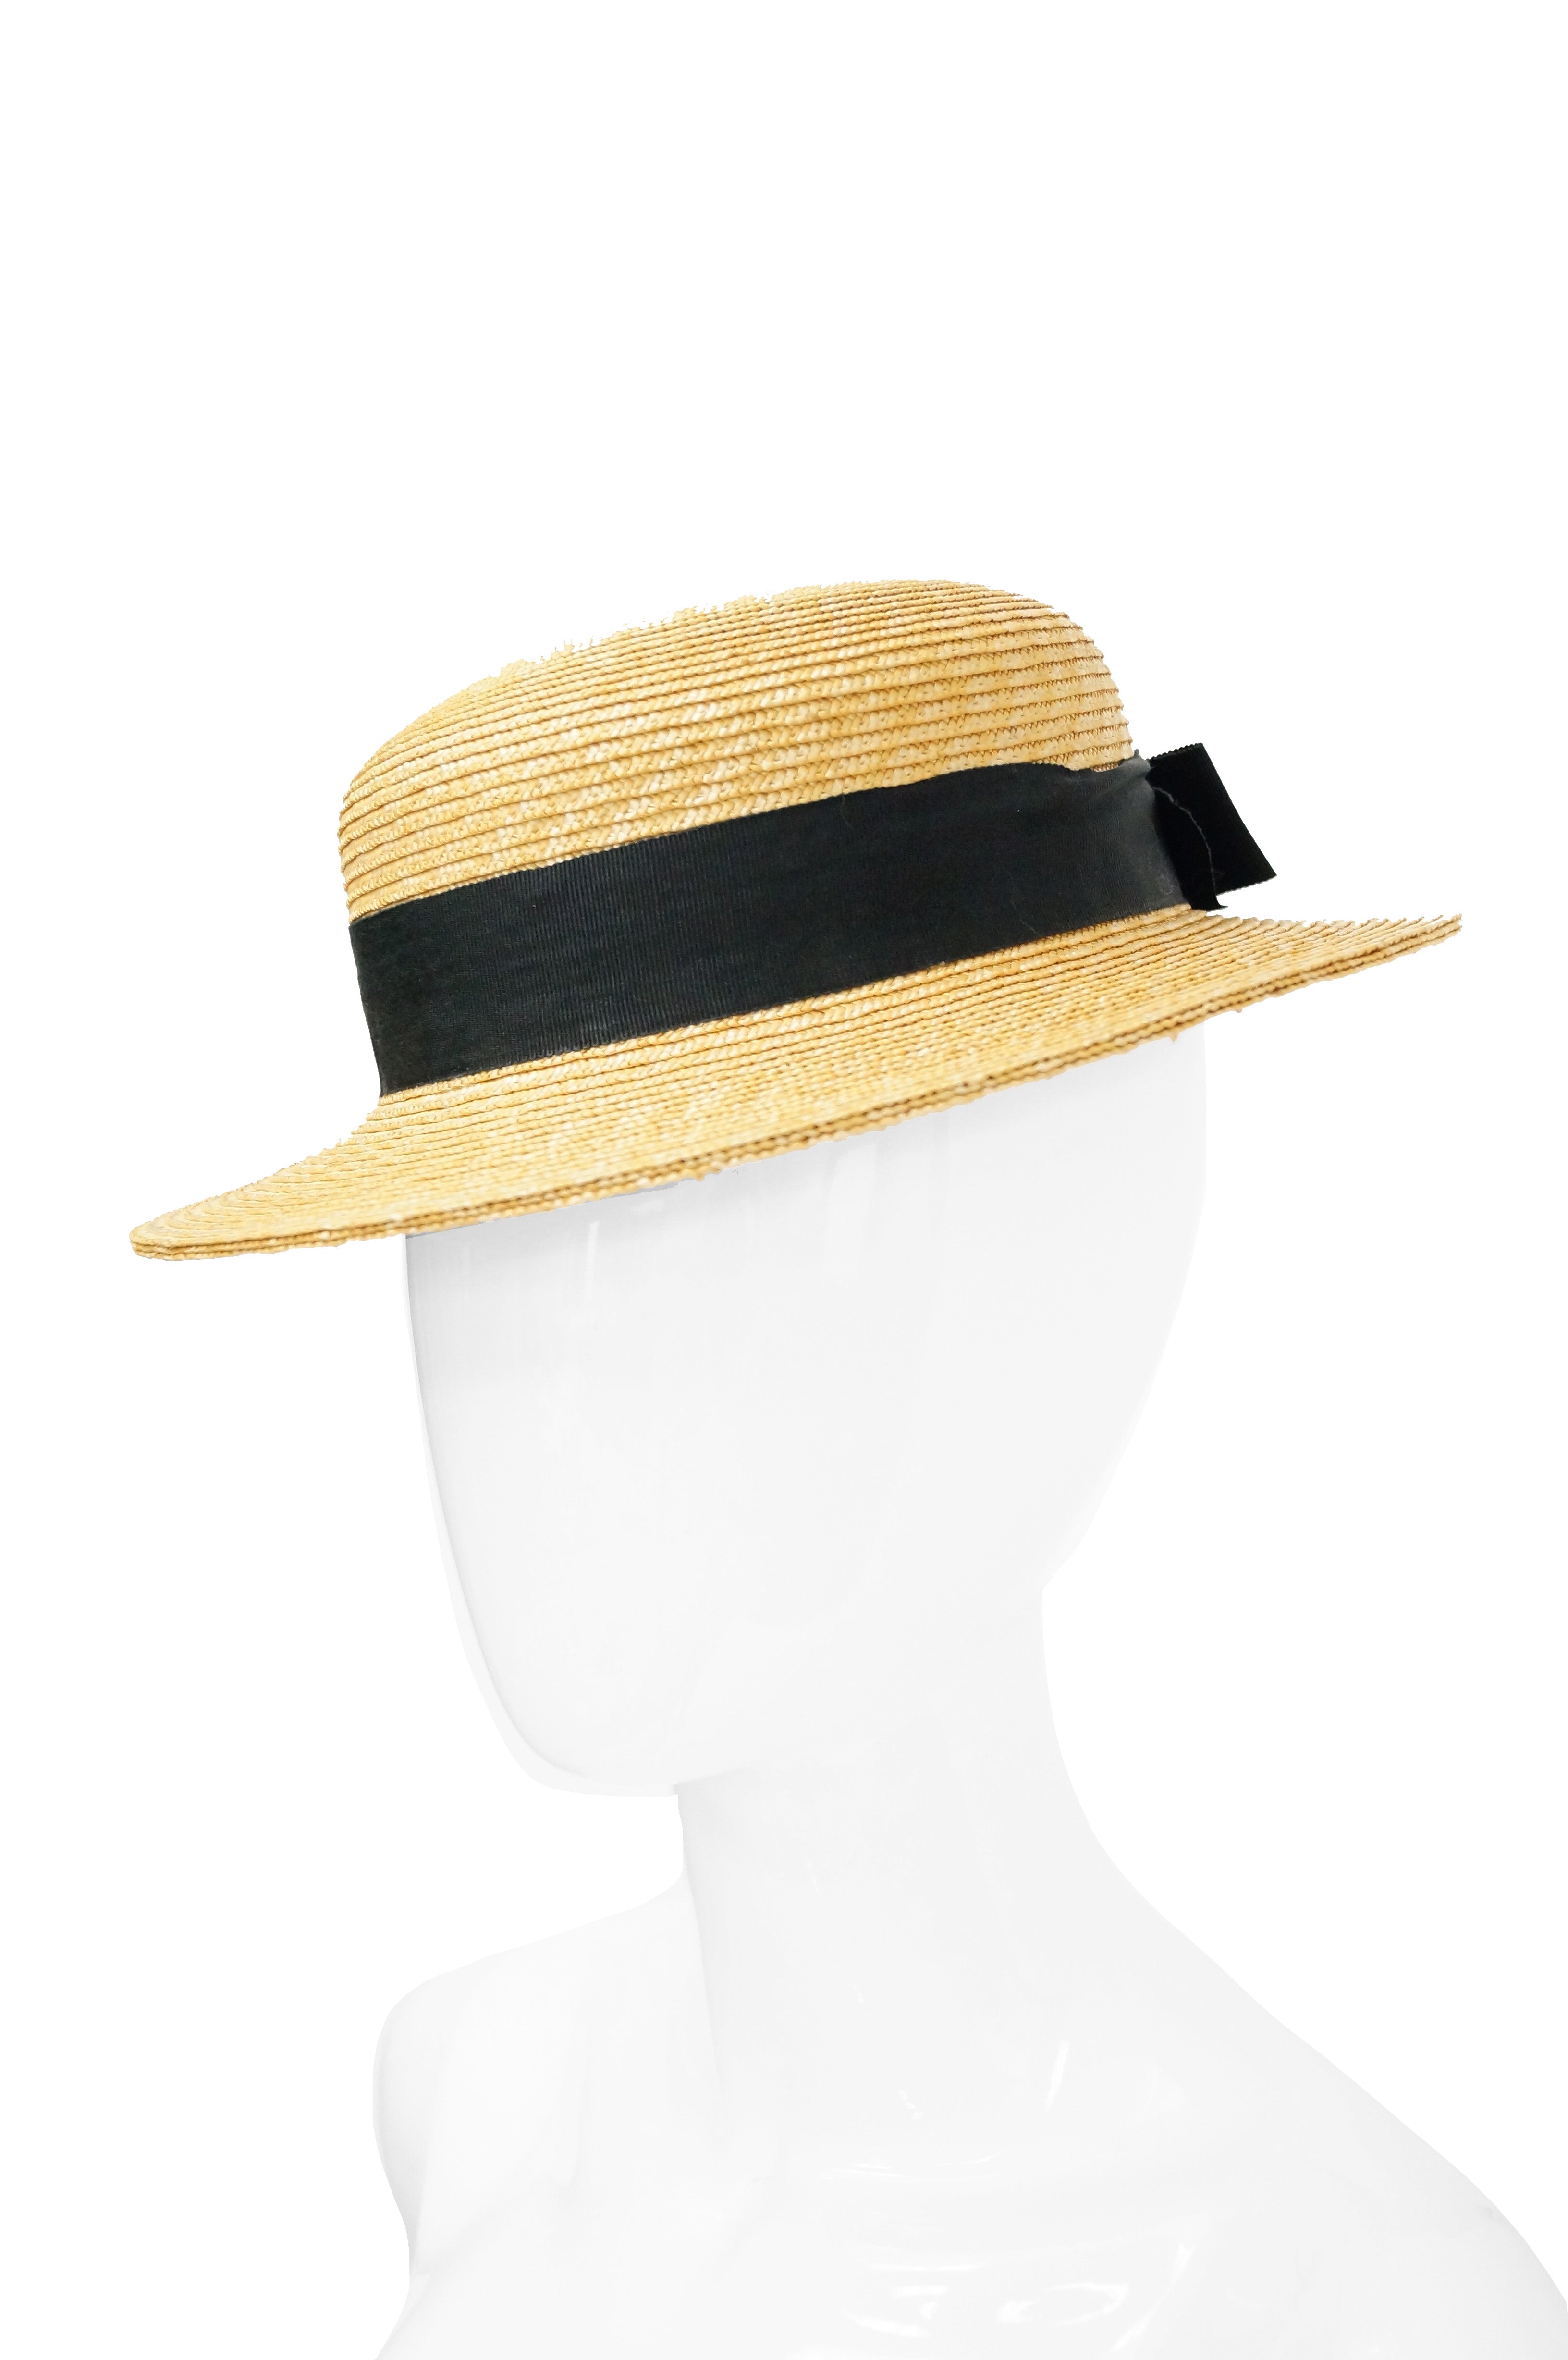 Saint Laurent mens straw hat. 59/L. $895